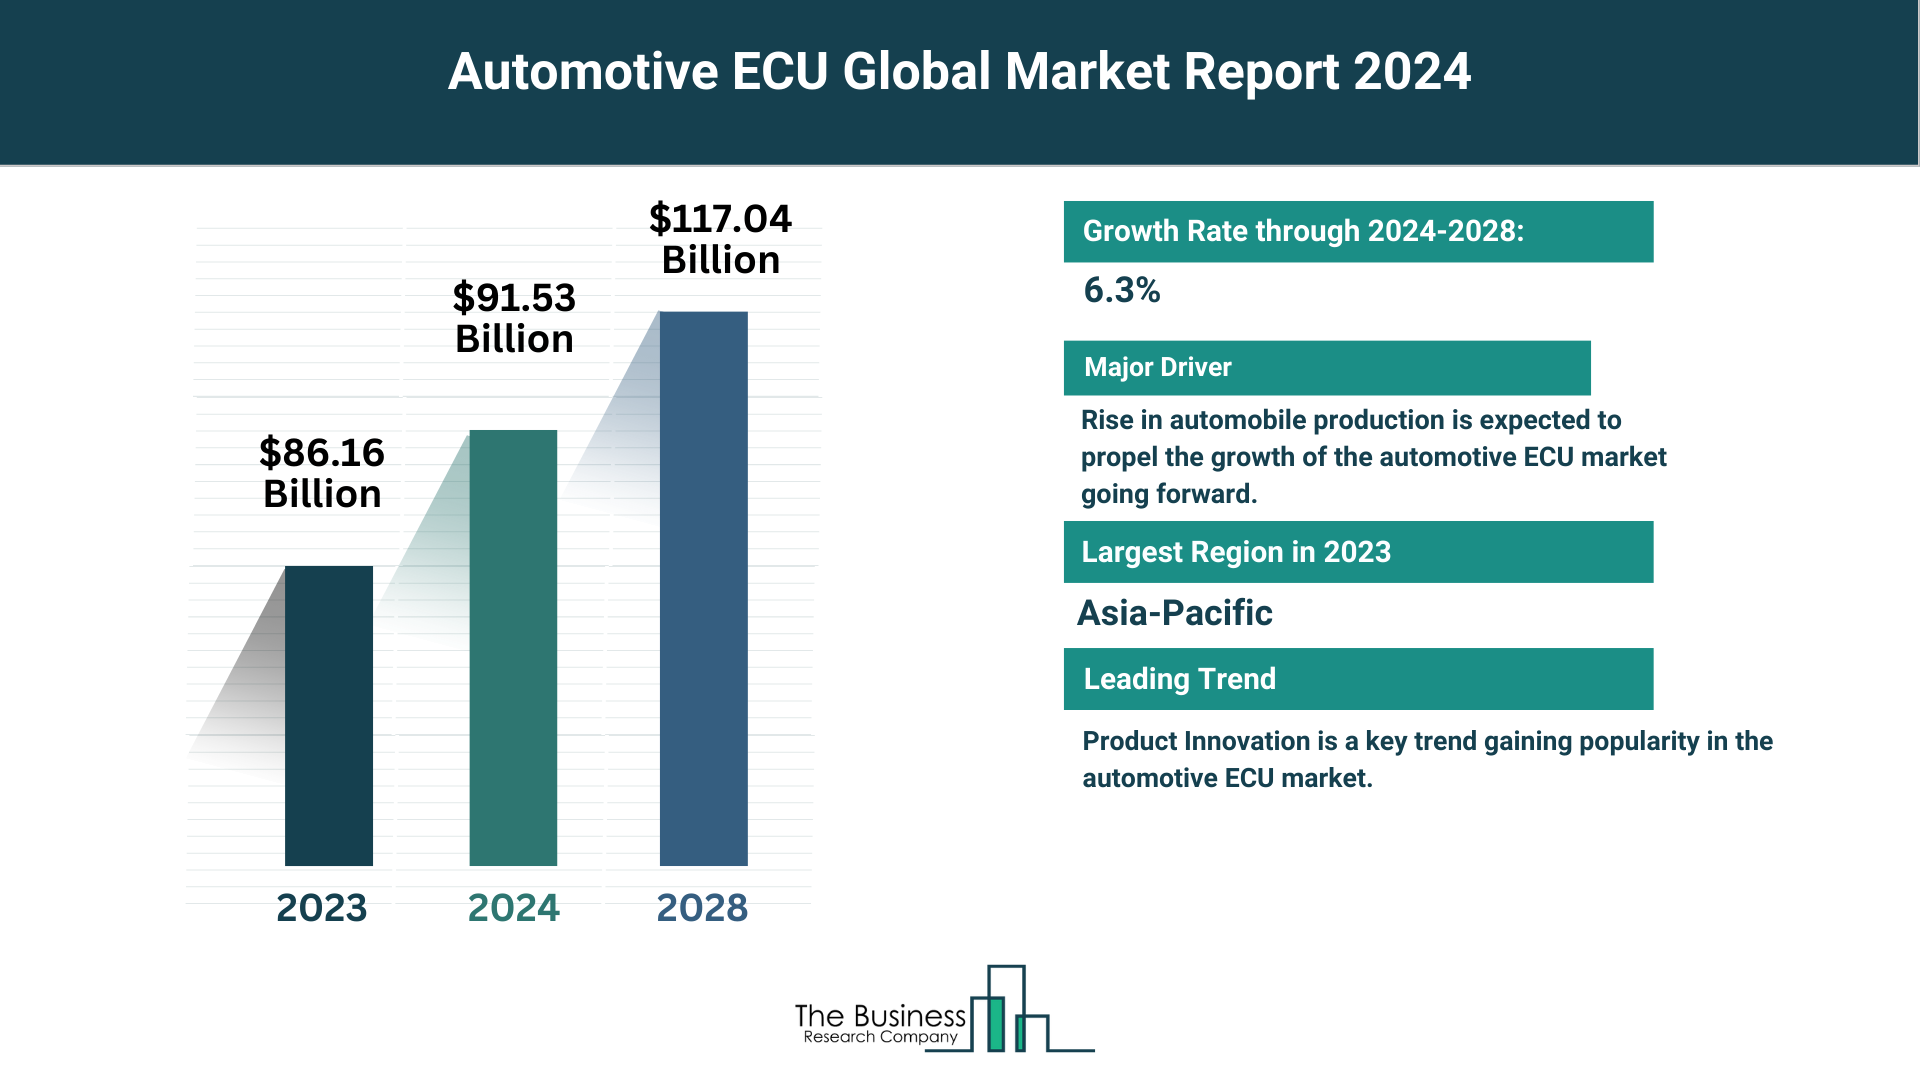 Global Automotive ECU Market